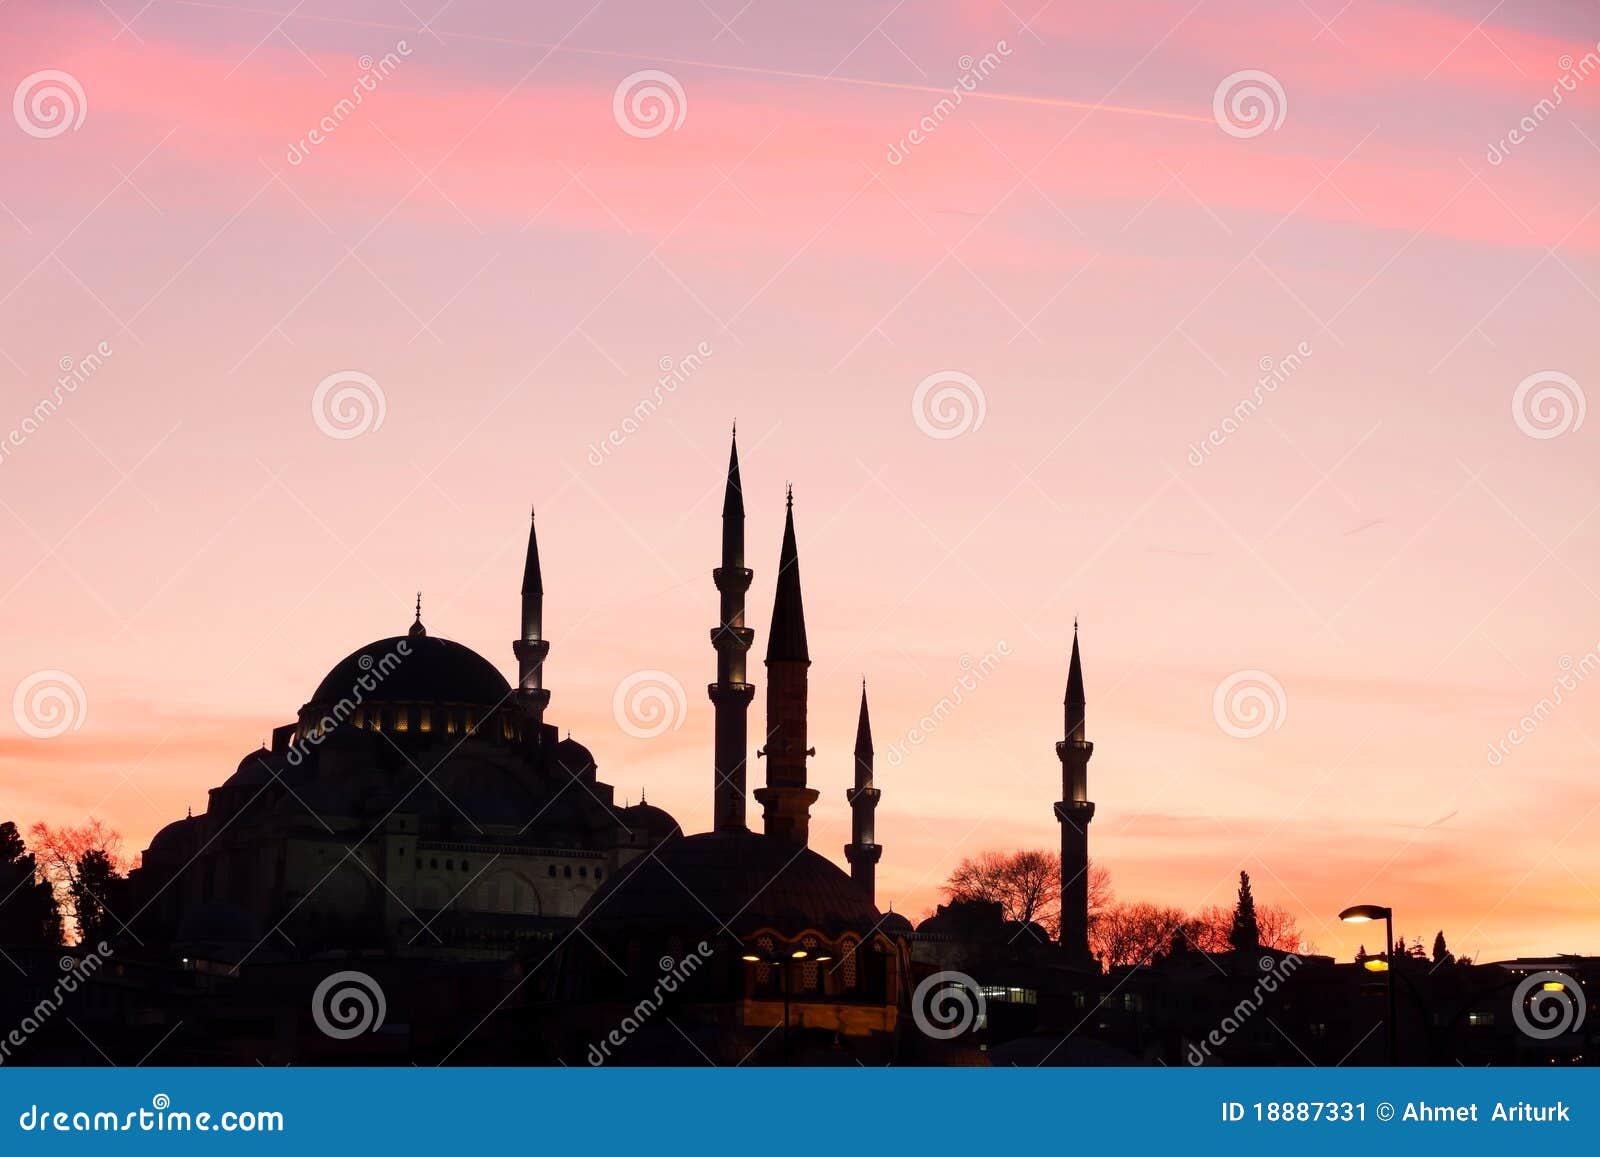 istanbul suleymaniye mosque